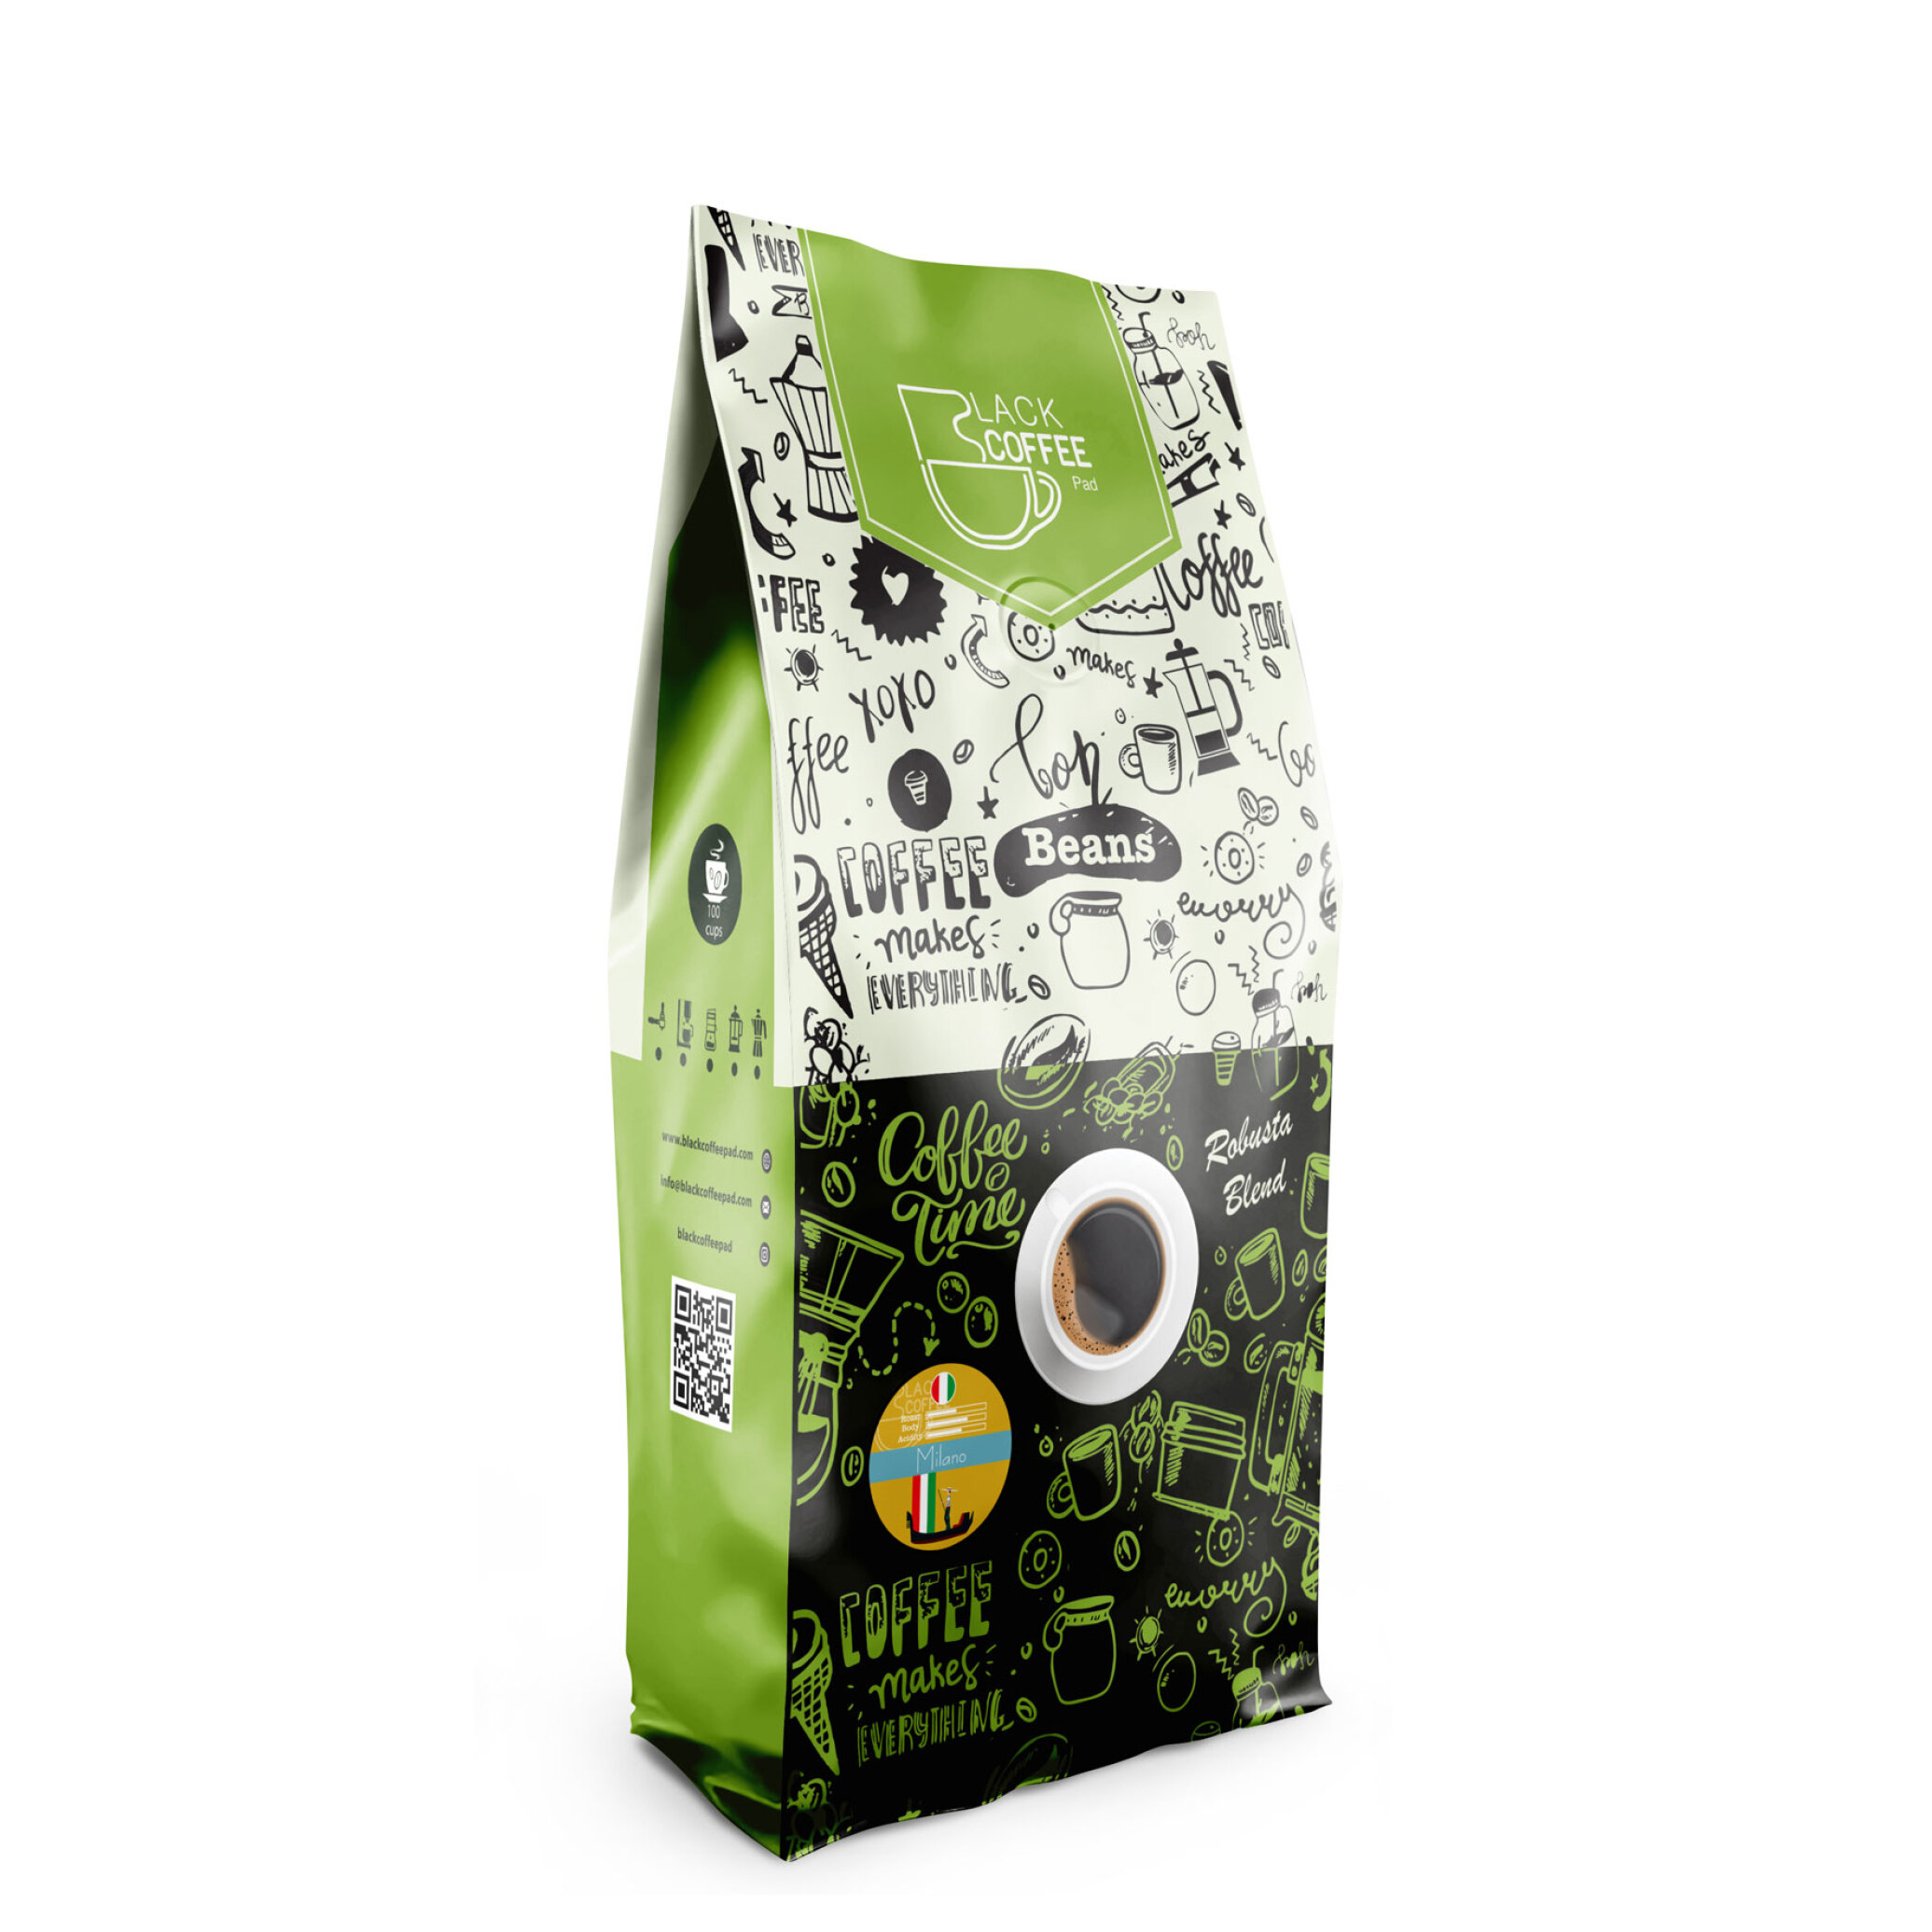  دانه قهوه میلانو- ۱ کیلو گرم Milano Coffee Beans | بلک کافی | دانه قهوه 